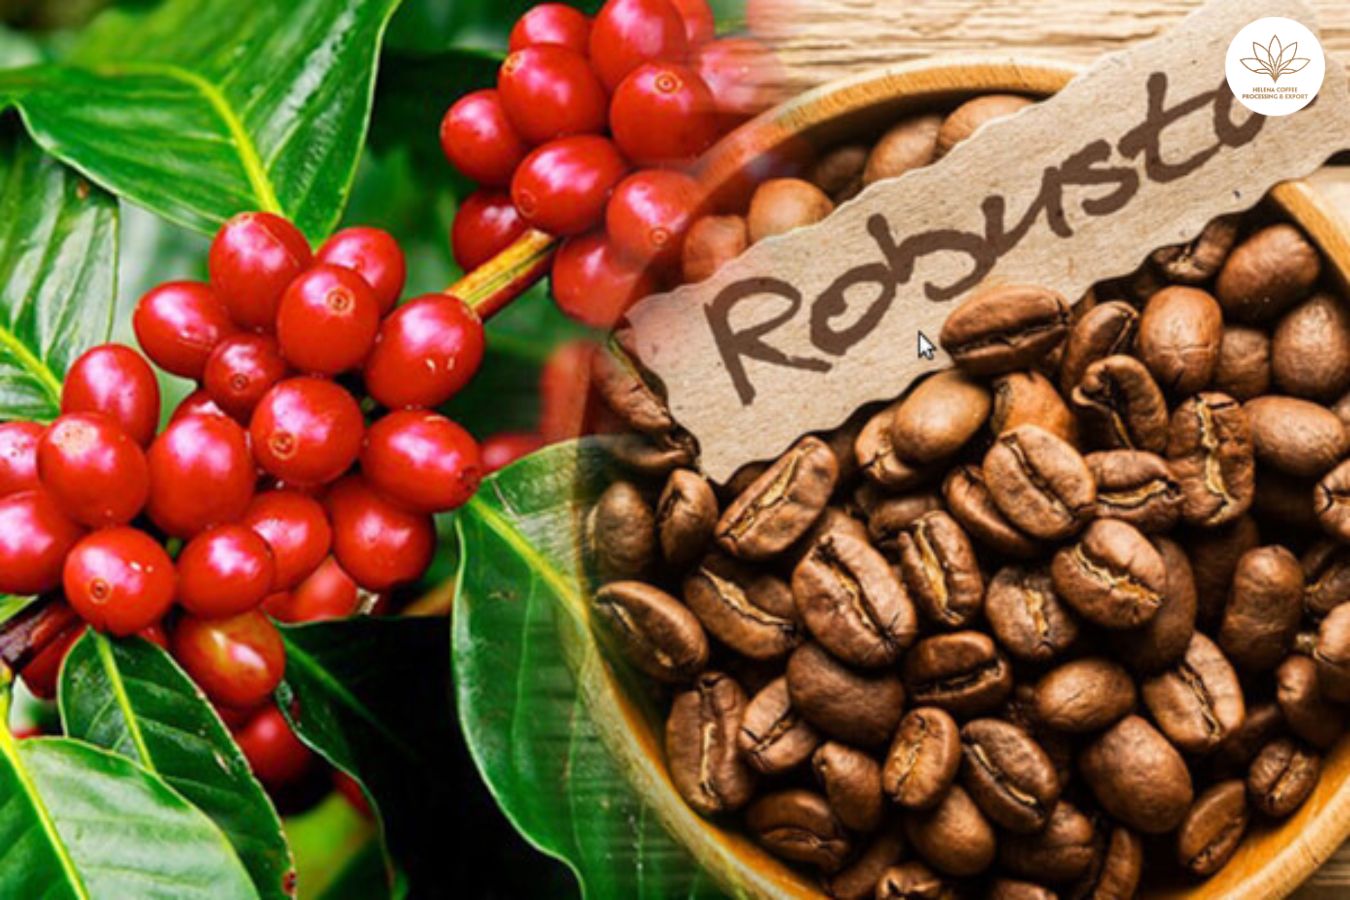 【全新大宗商品产品重磅上线】罗布斯塔咖啡豆：徘徊在历史高点附近!